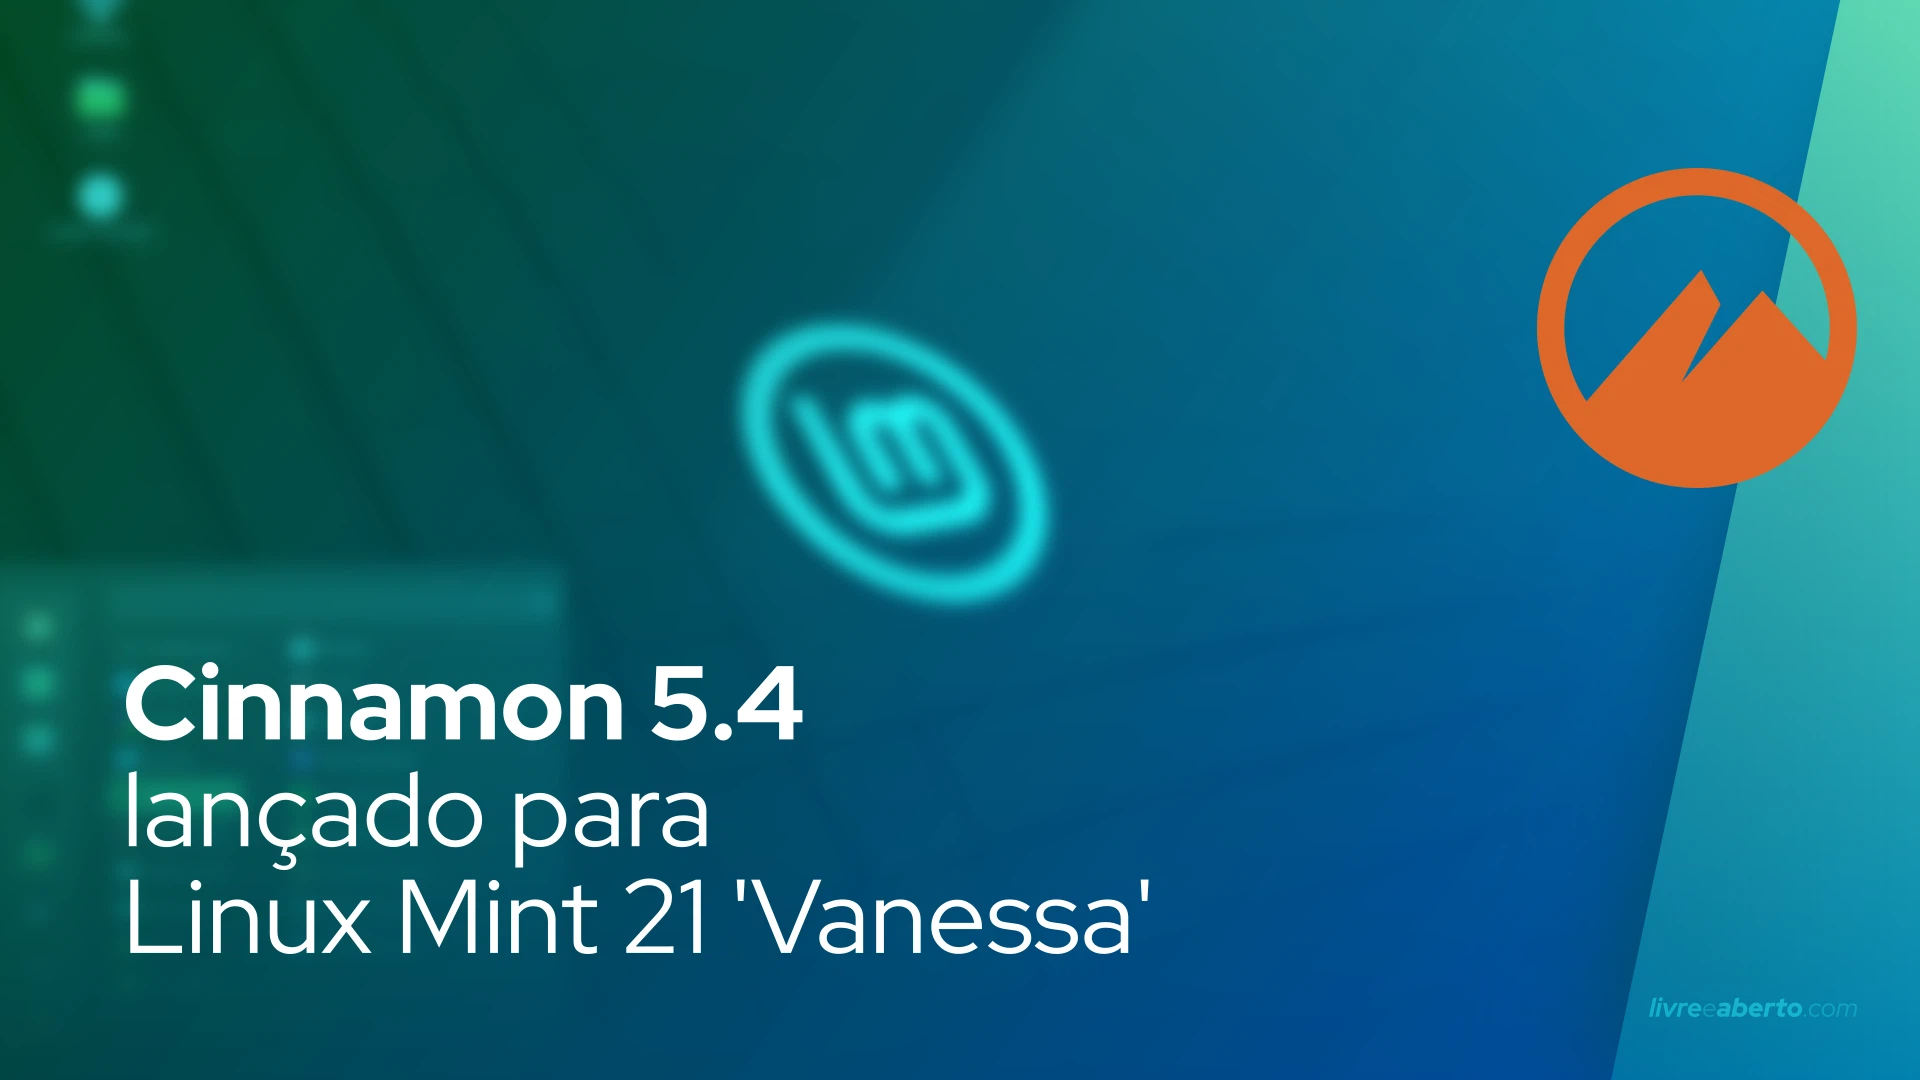 Cinnamon 5.4 lançado para Linux Mint 21 'Vanessa'